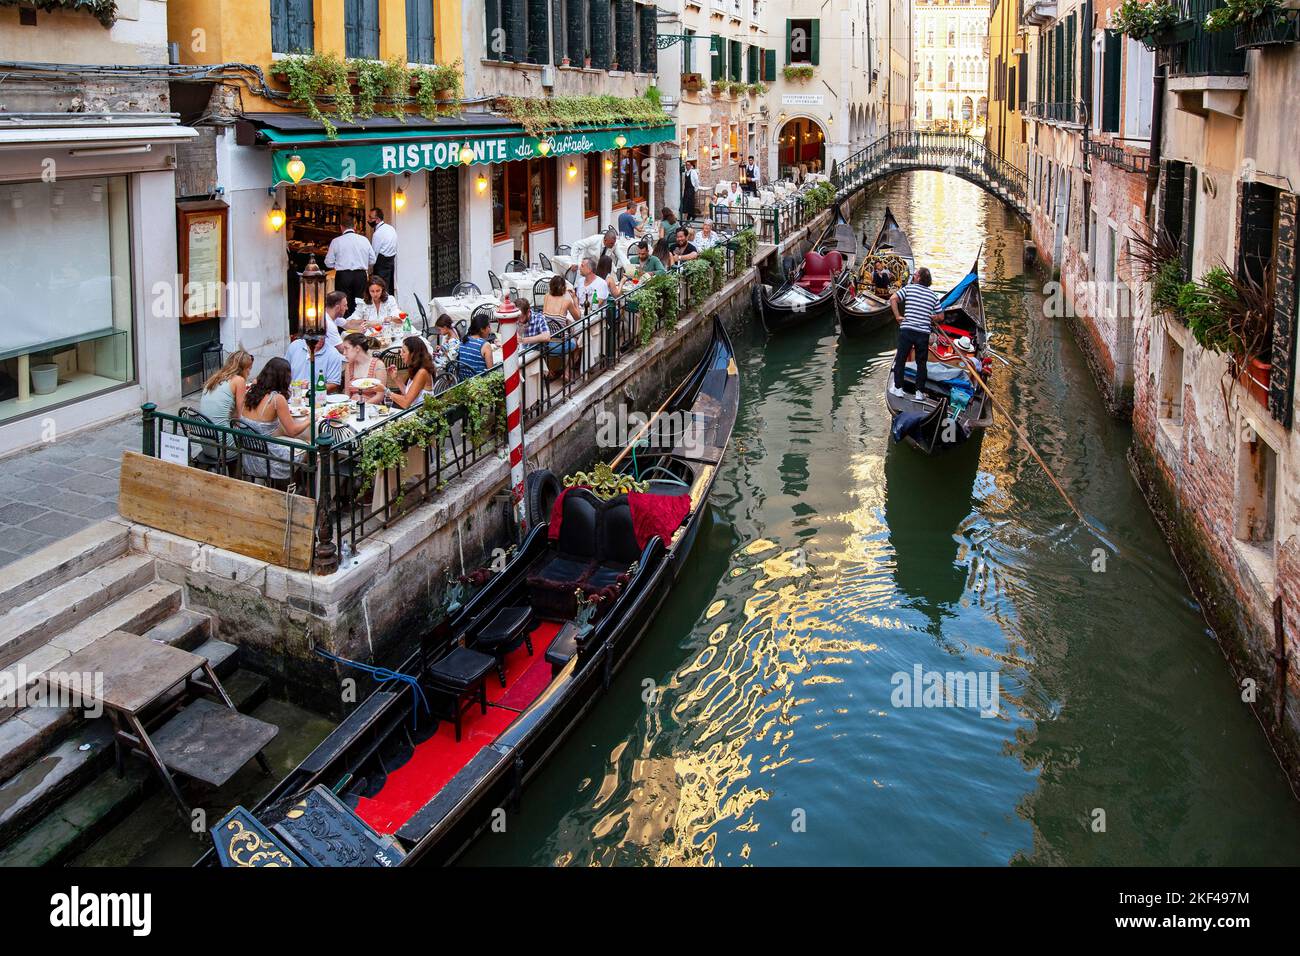 typisches Rstaurant an einem Kanal, Gondeln, Venedig, Venetien, Italien Stock Photo